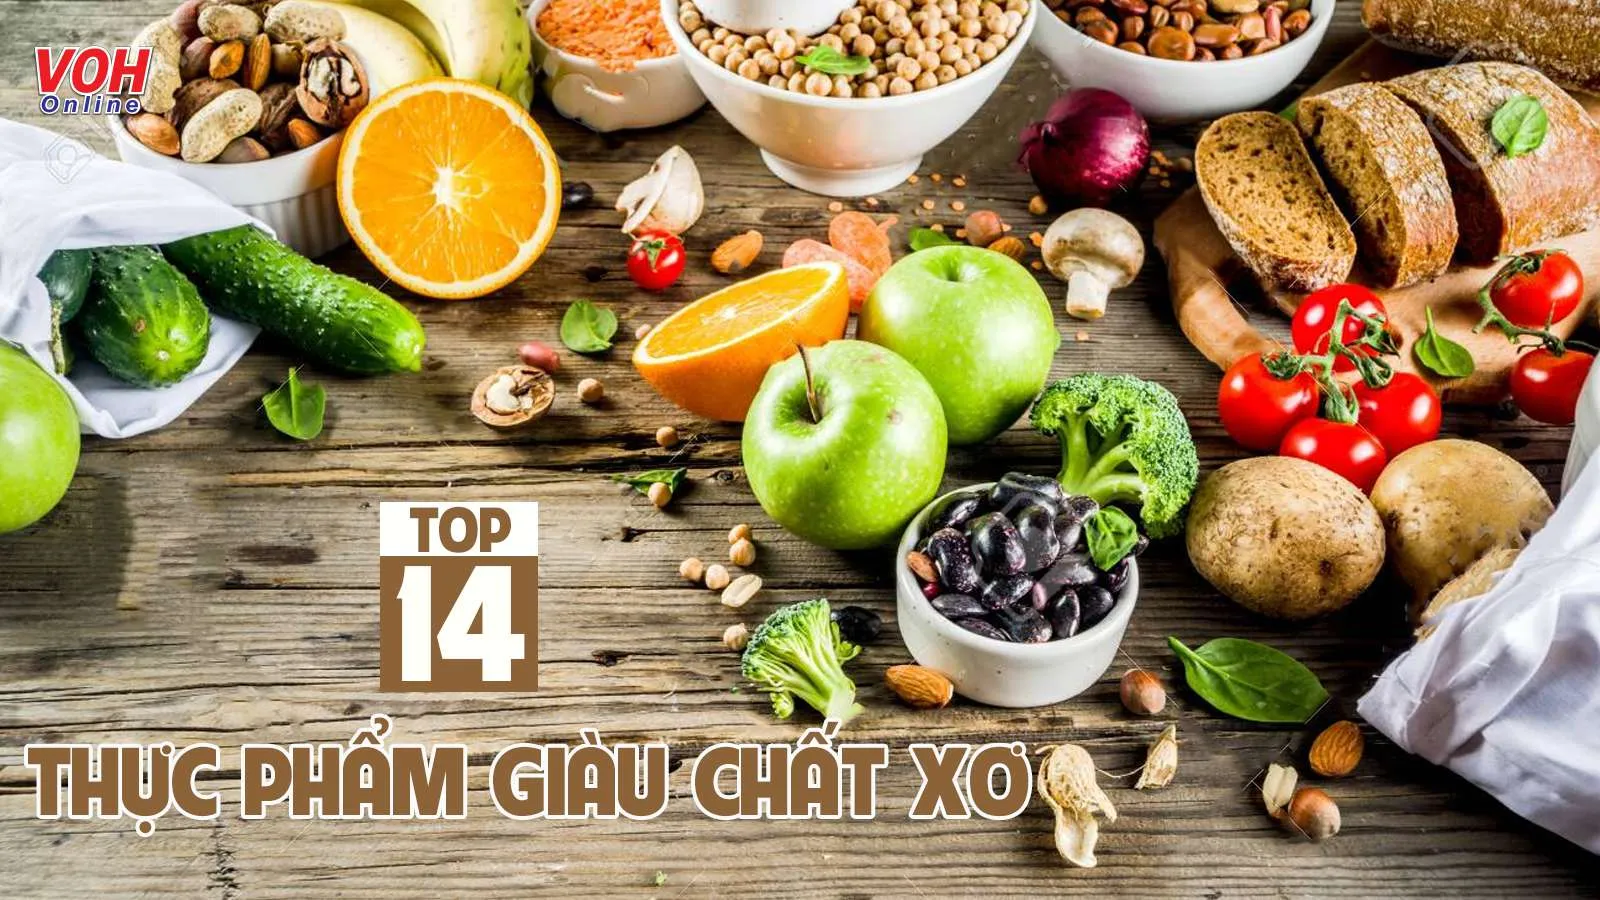 ‘Bỏ túi’ 14 loại thực phẩm giàu chất xơ tự nhiên tốt cho sức khỏe